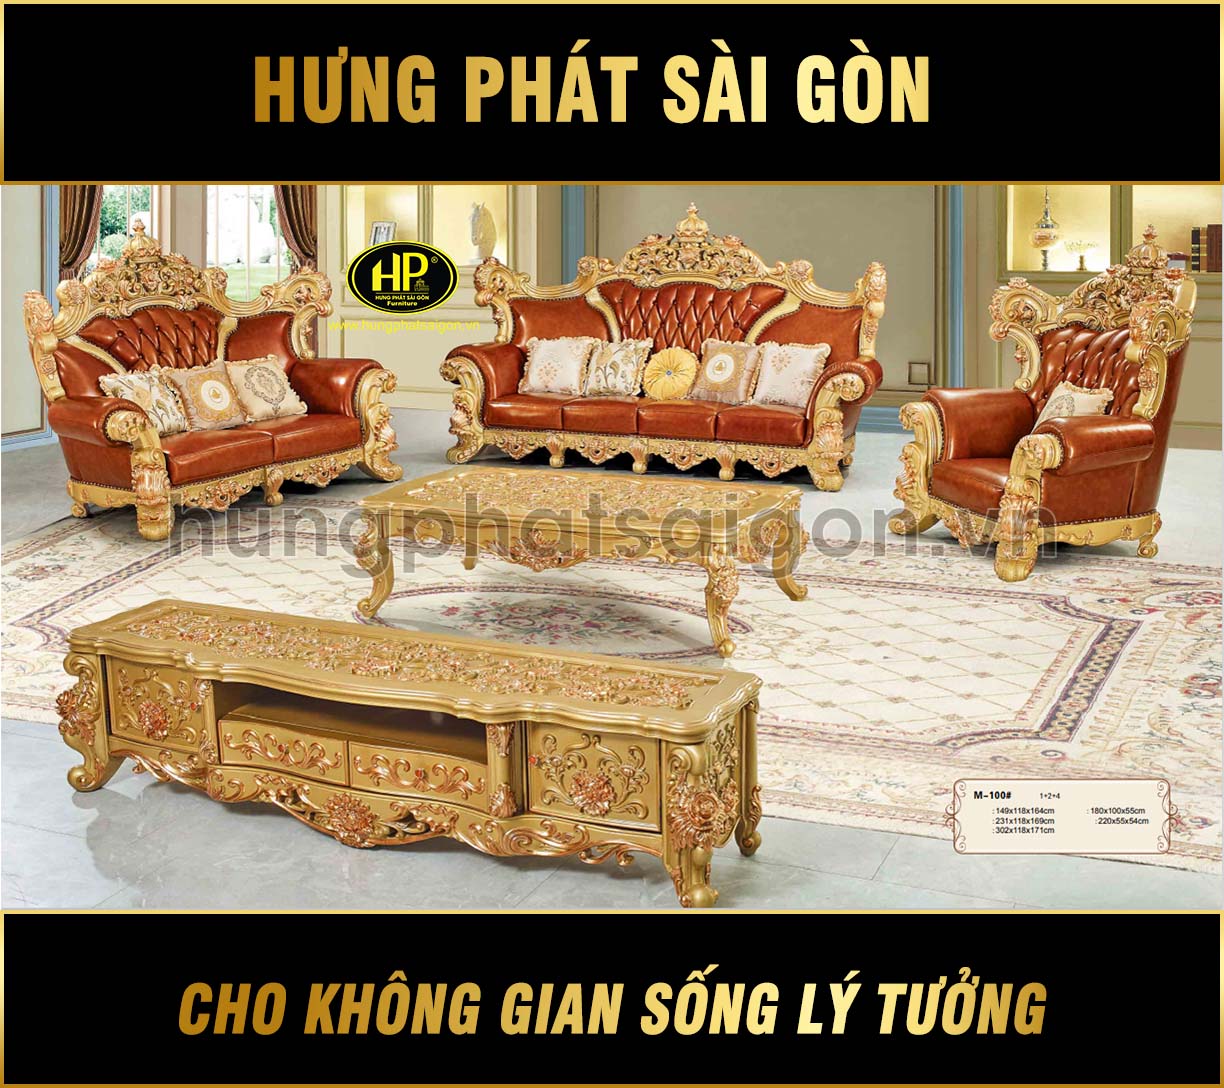 Sofa tân cổ điển nhập khẩu cao cấp M-100 - Hưng Phát Sài Gòn